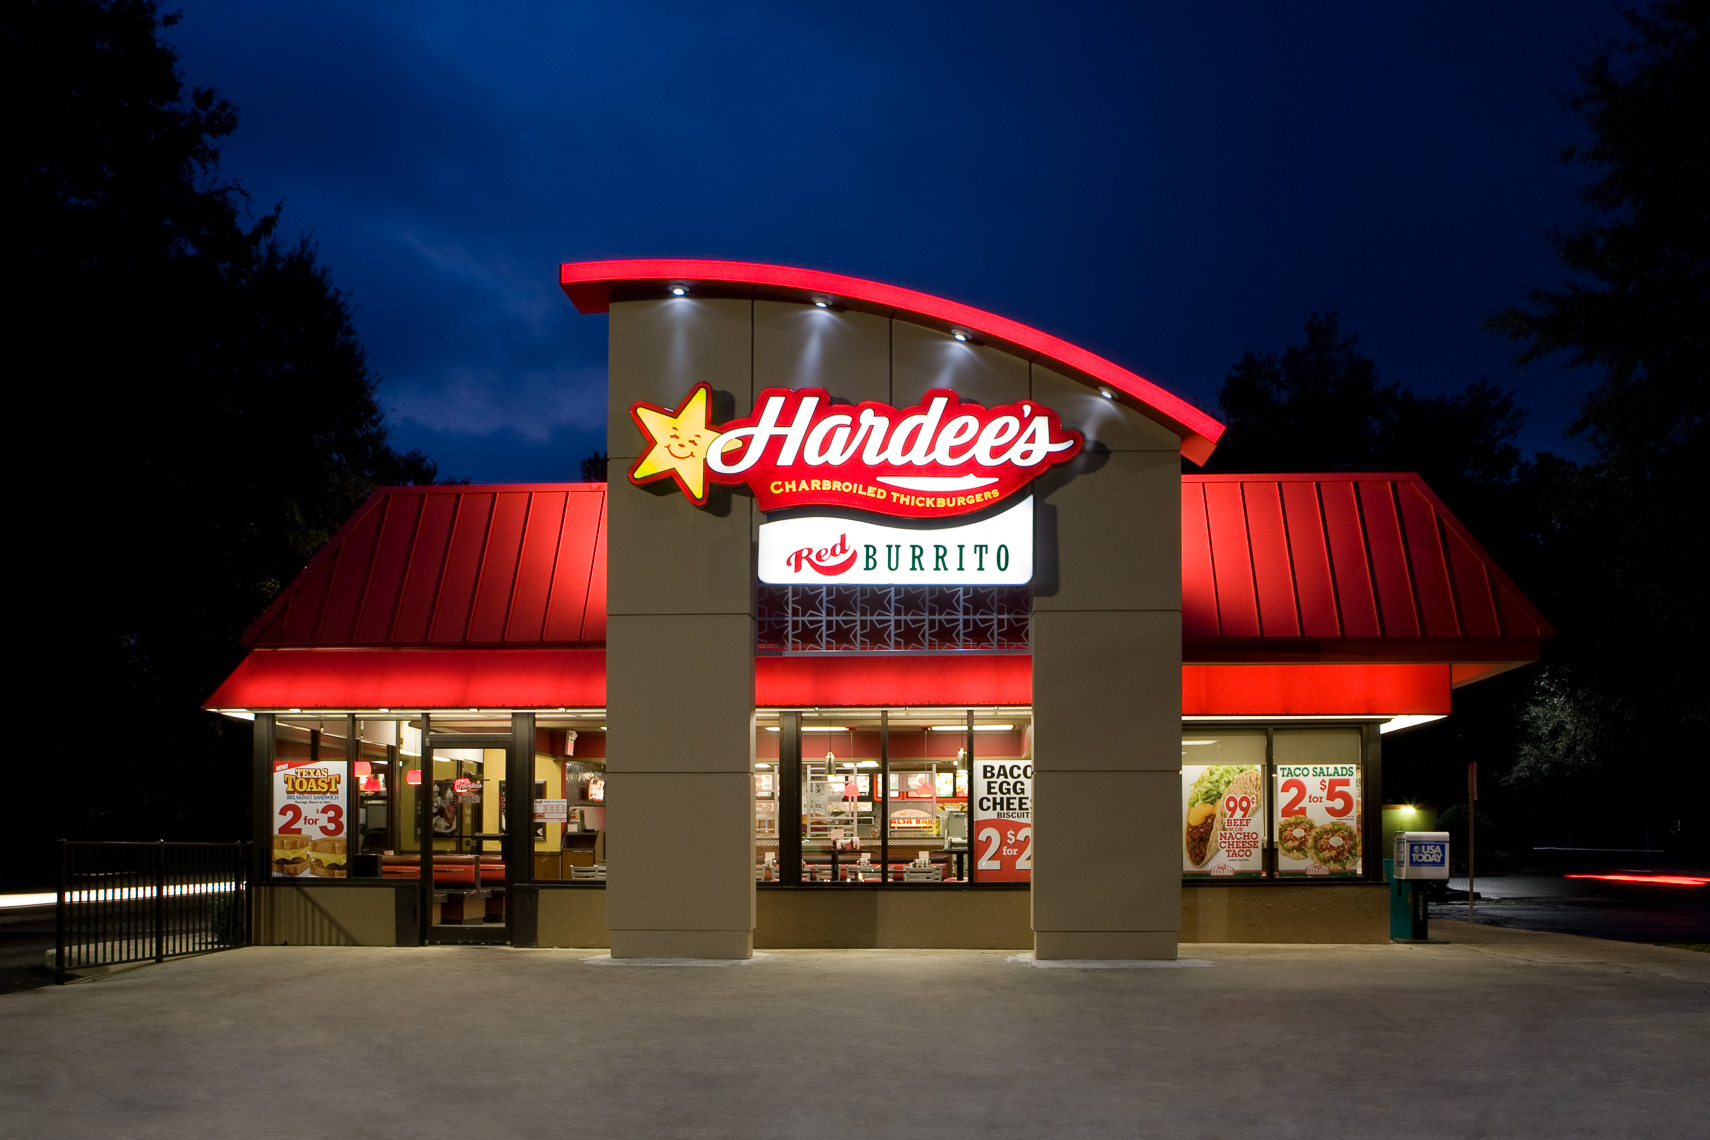 Hardees Restaurant at Night